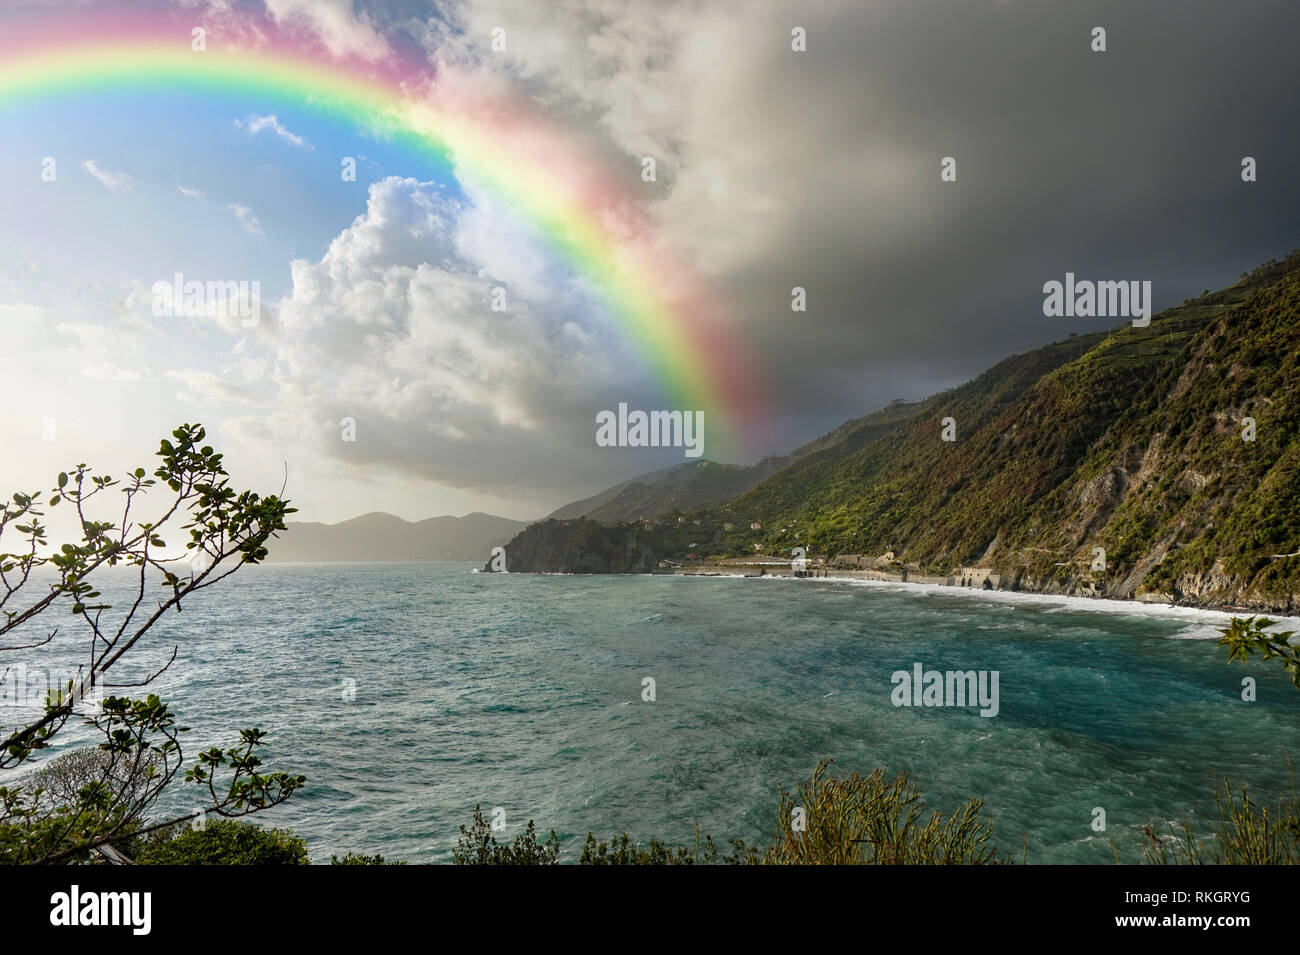 Beautiful italian Coast with rainbow sunny and cloudy sky Stock Photo